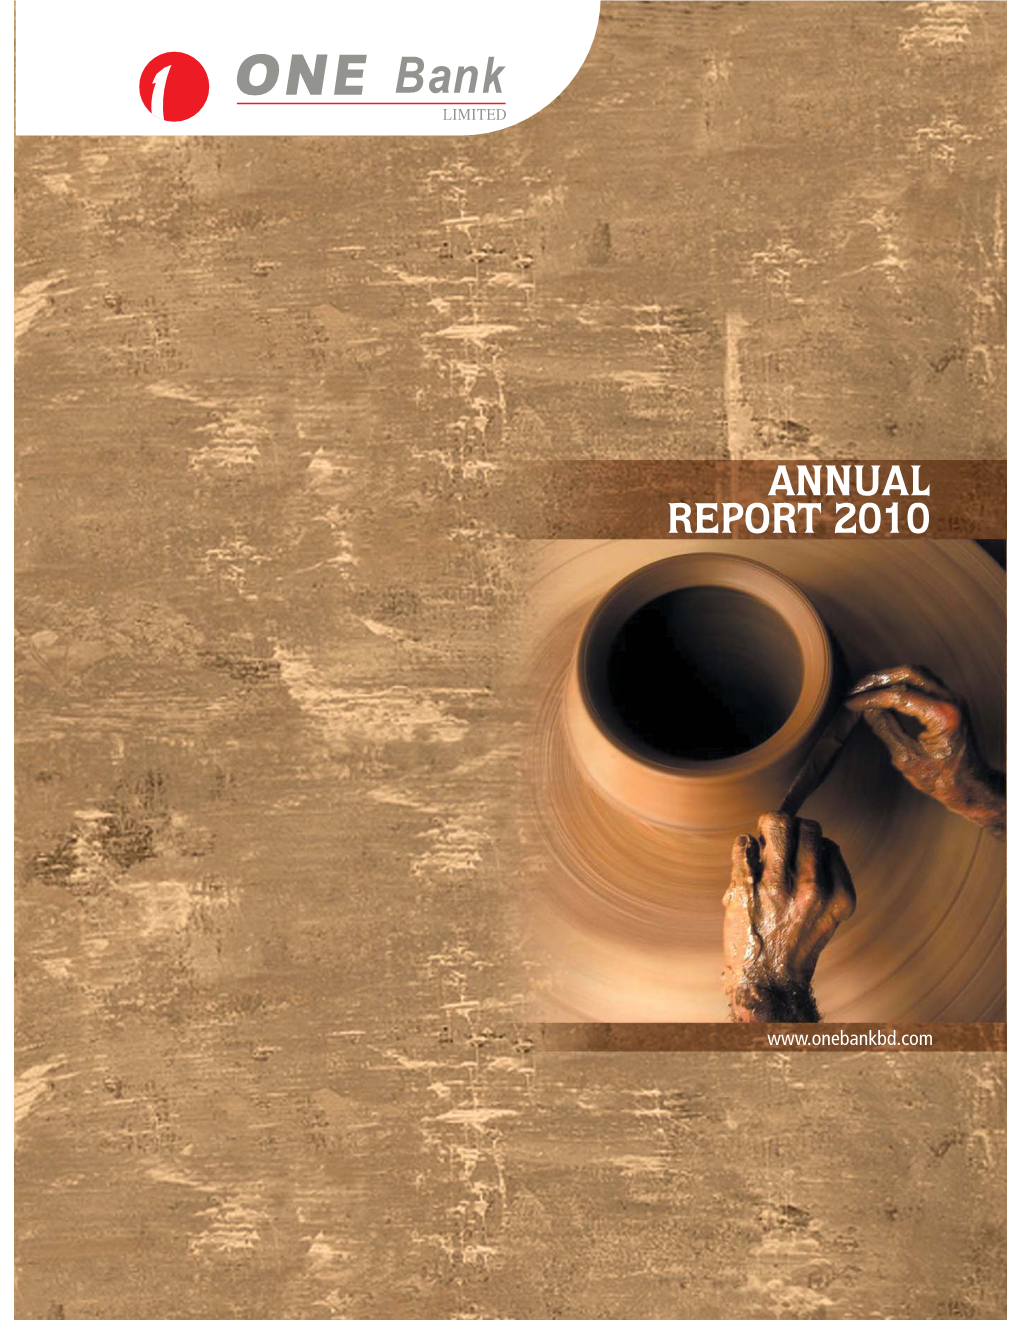 OBL Annual Report 2010